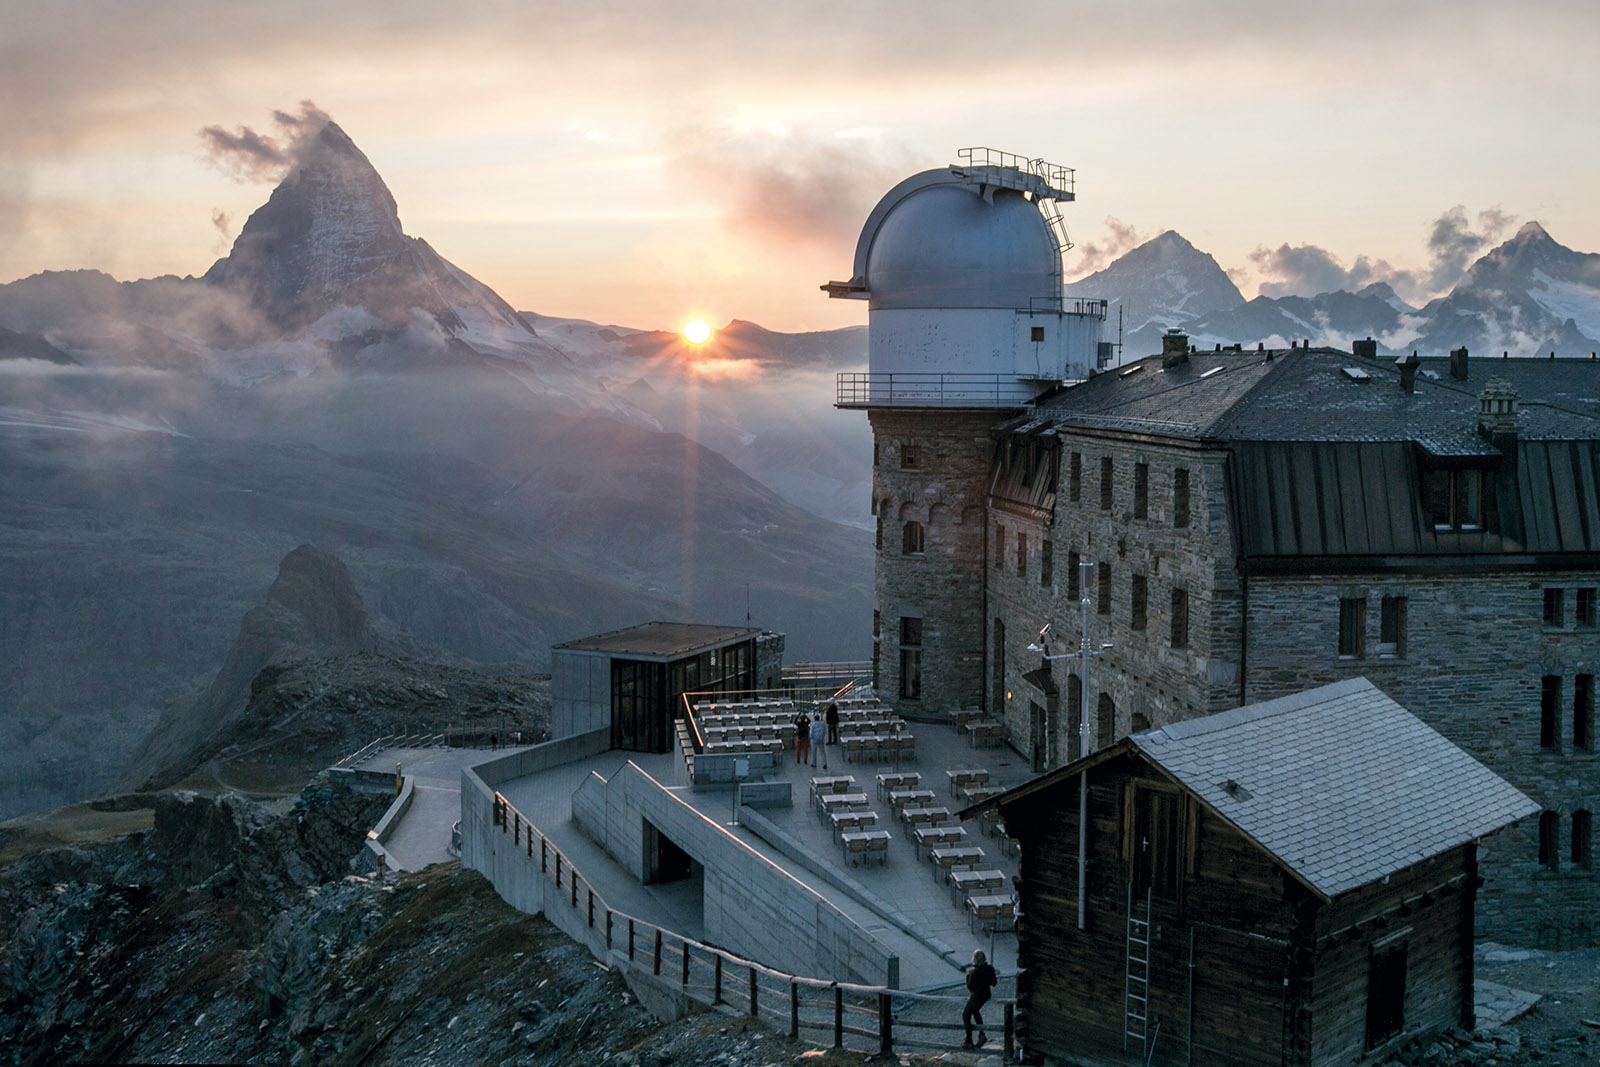 Sunset of Matterhorn and Gornergrat Observatory, Valais, Switzerland, Carl Sagan